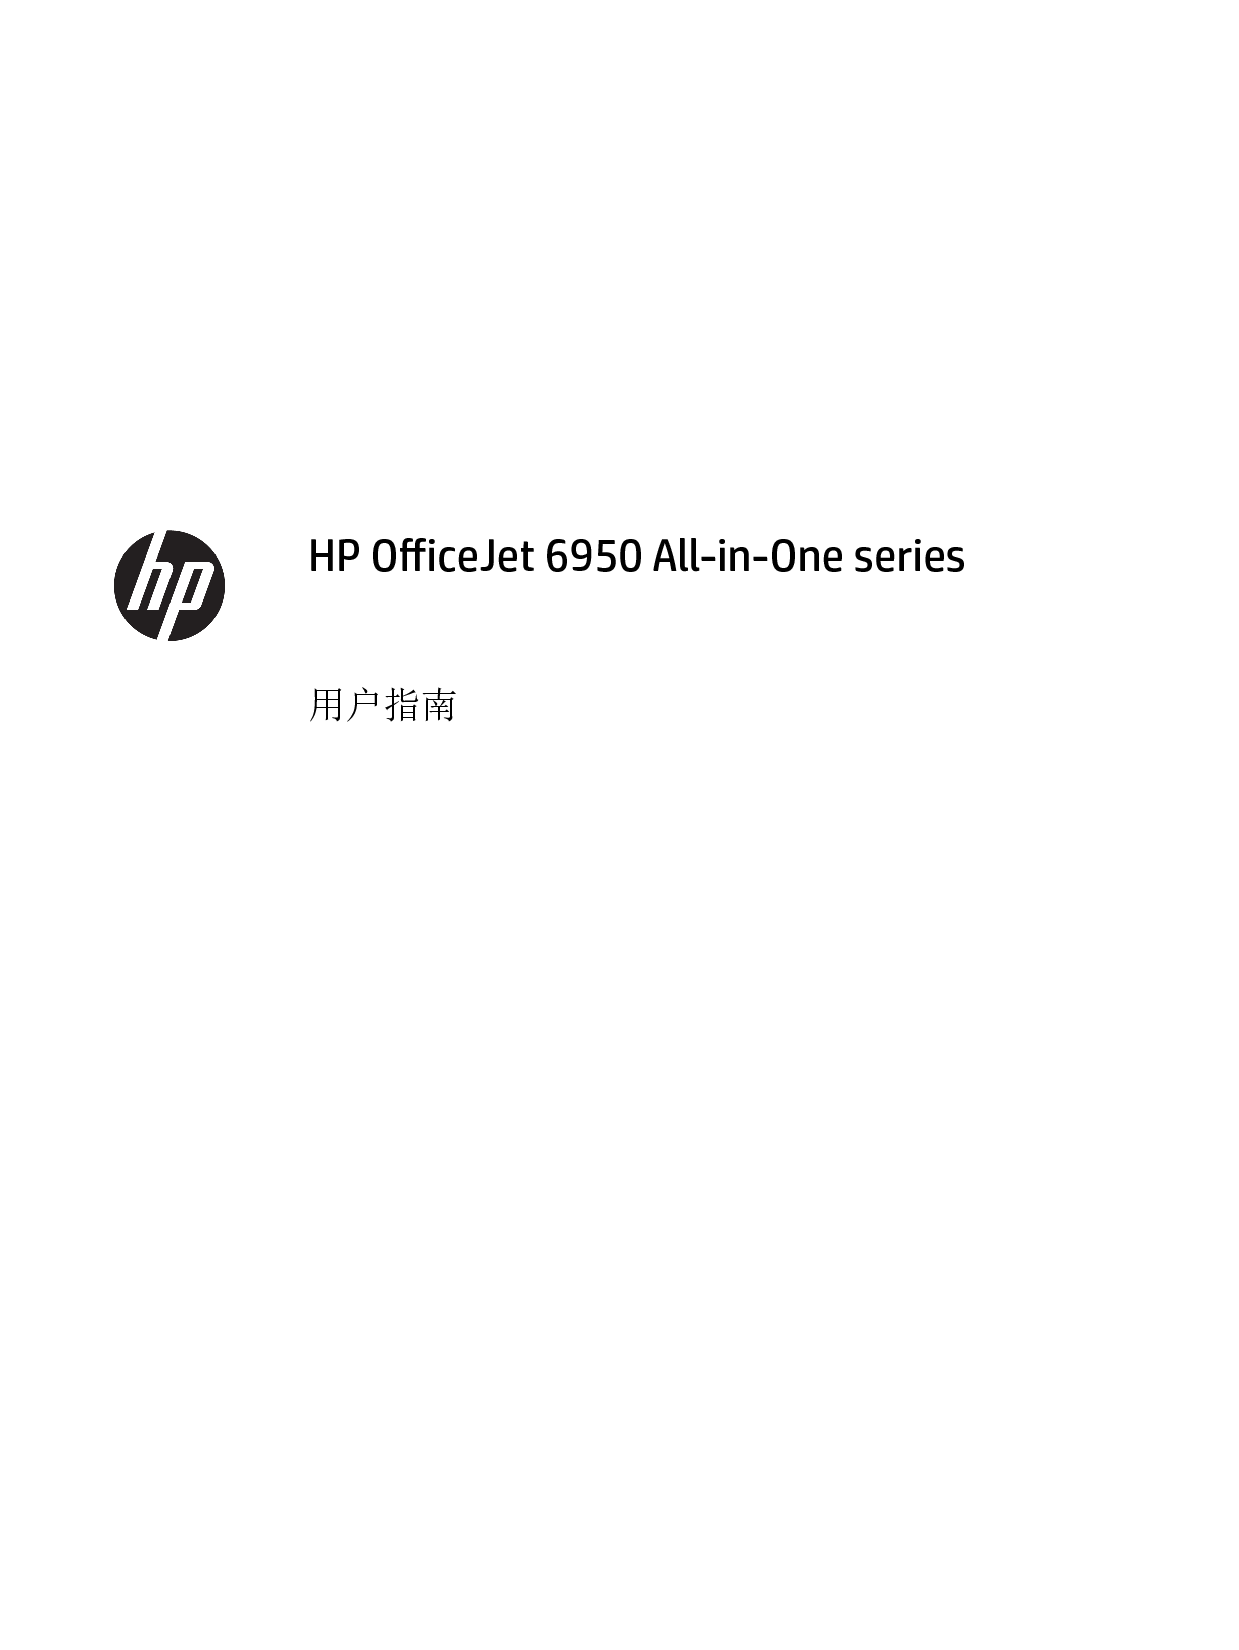 惠普 HP OfficeJet 6950 用户指南 第1页